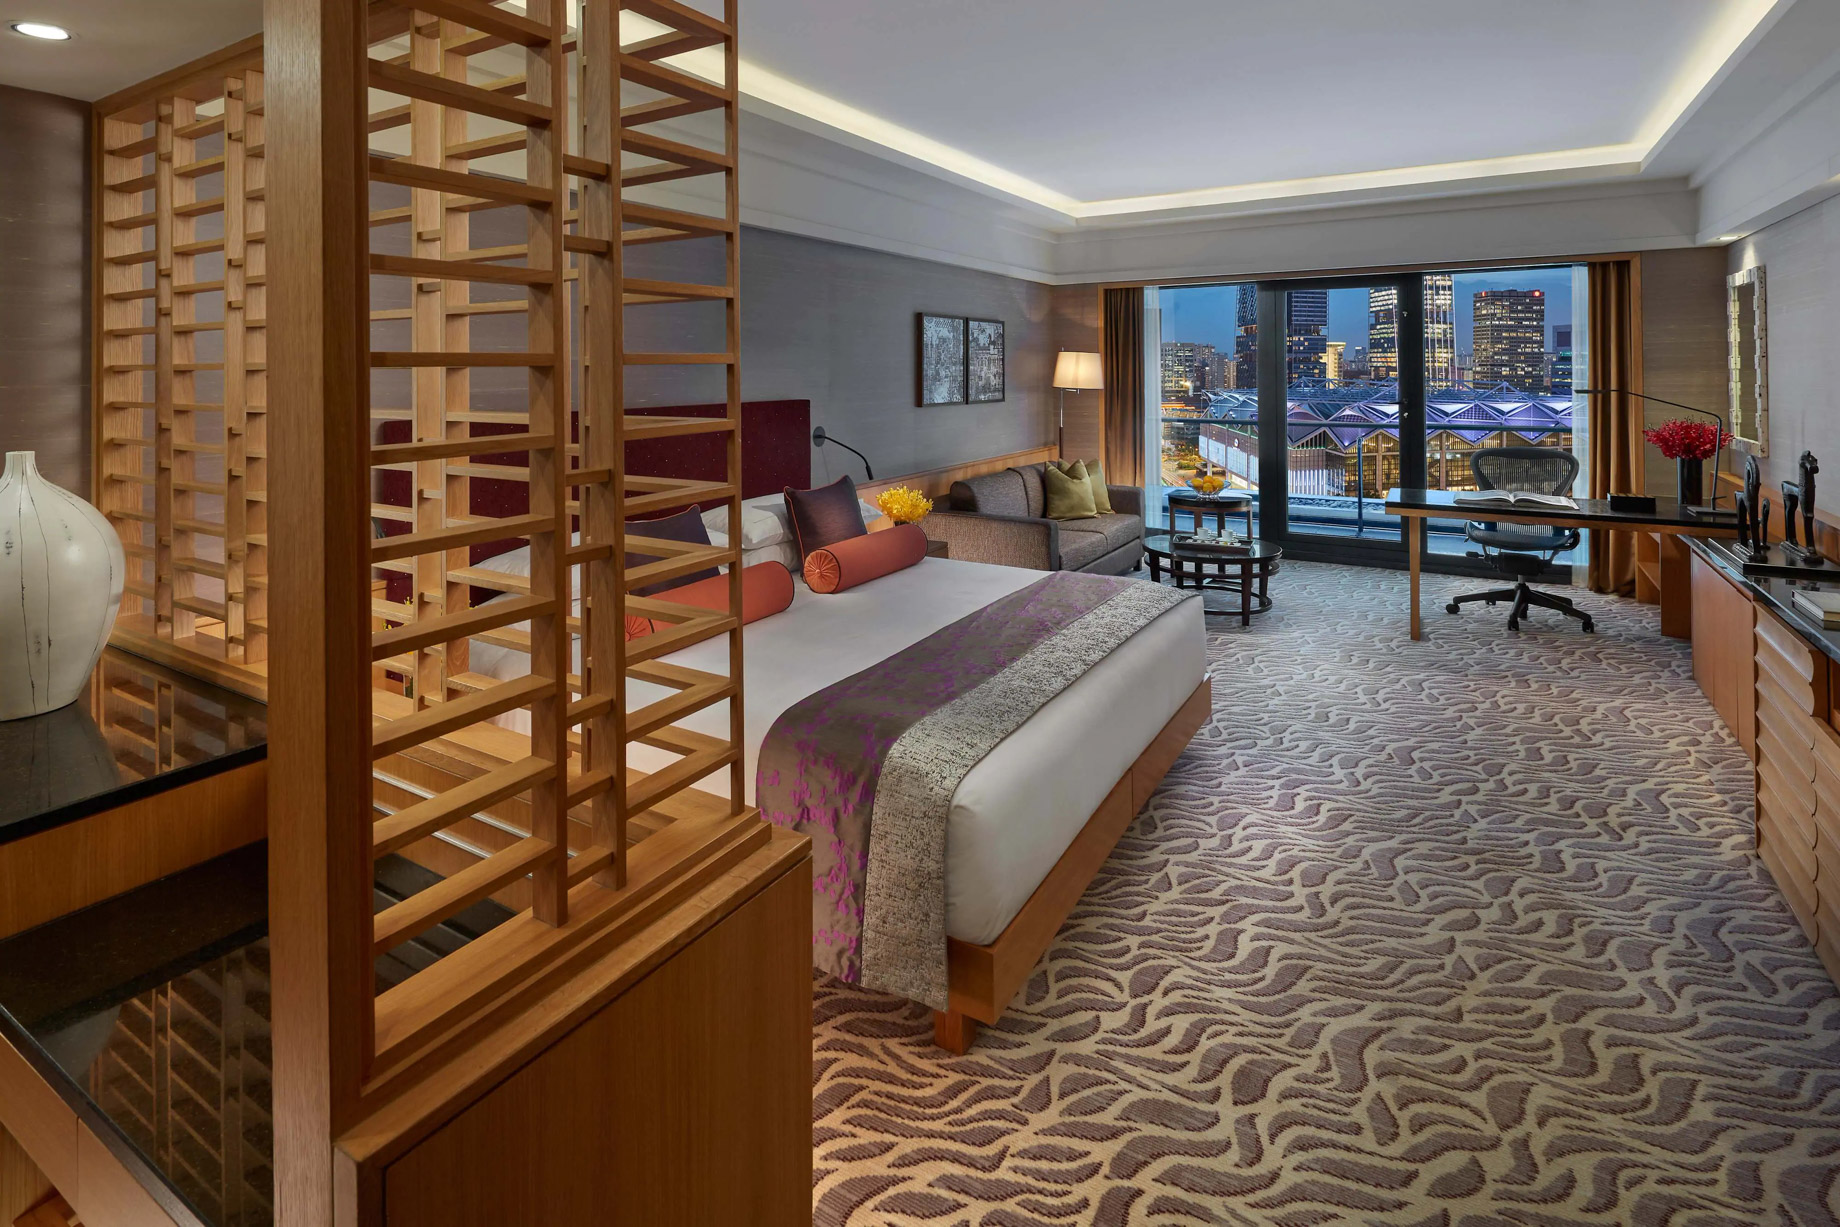 Mandarin Oriental, Singapore Hotel – Singapore – Premium Room